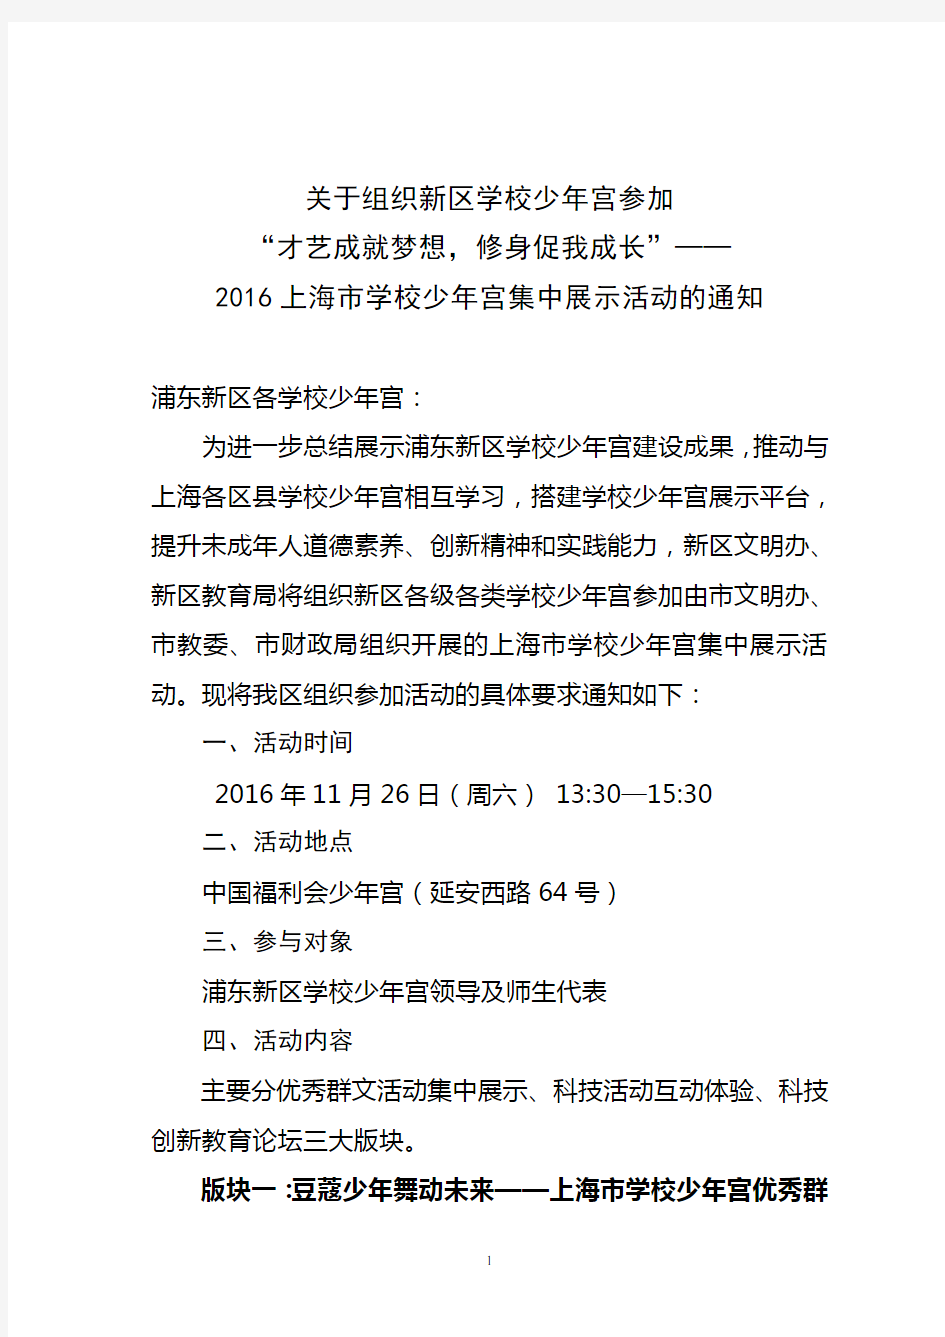 上海市学校少年宫集中展示活动的通知